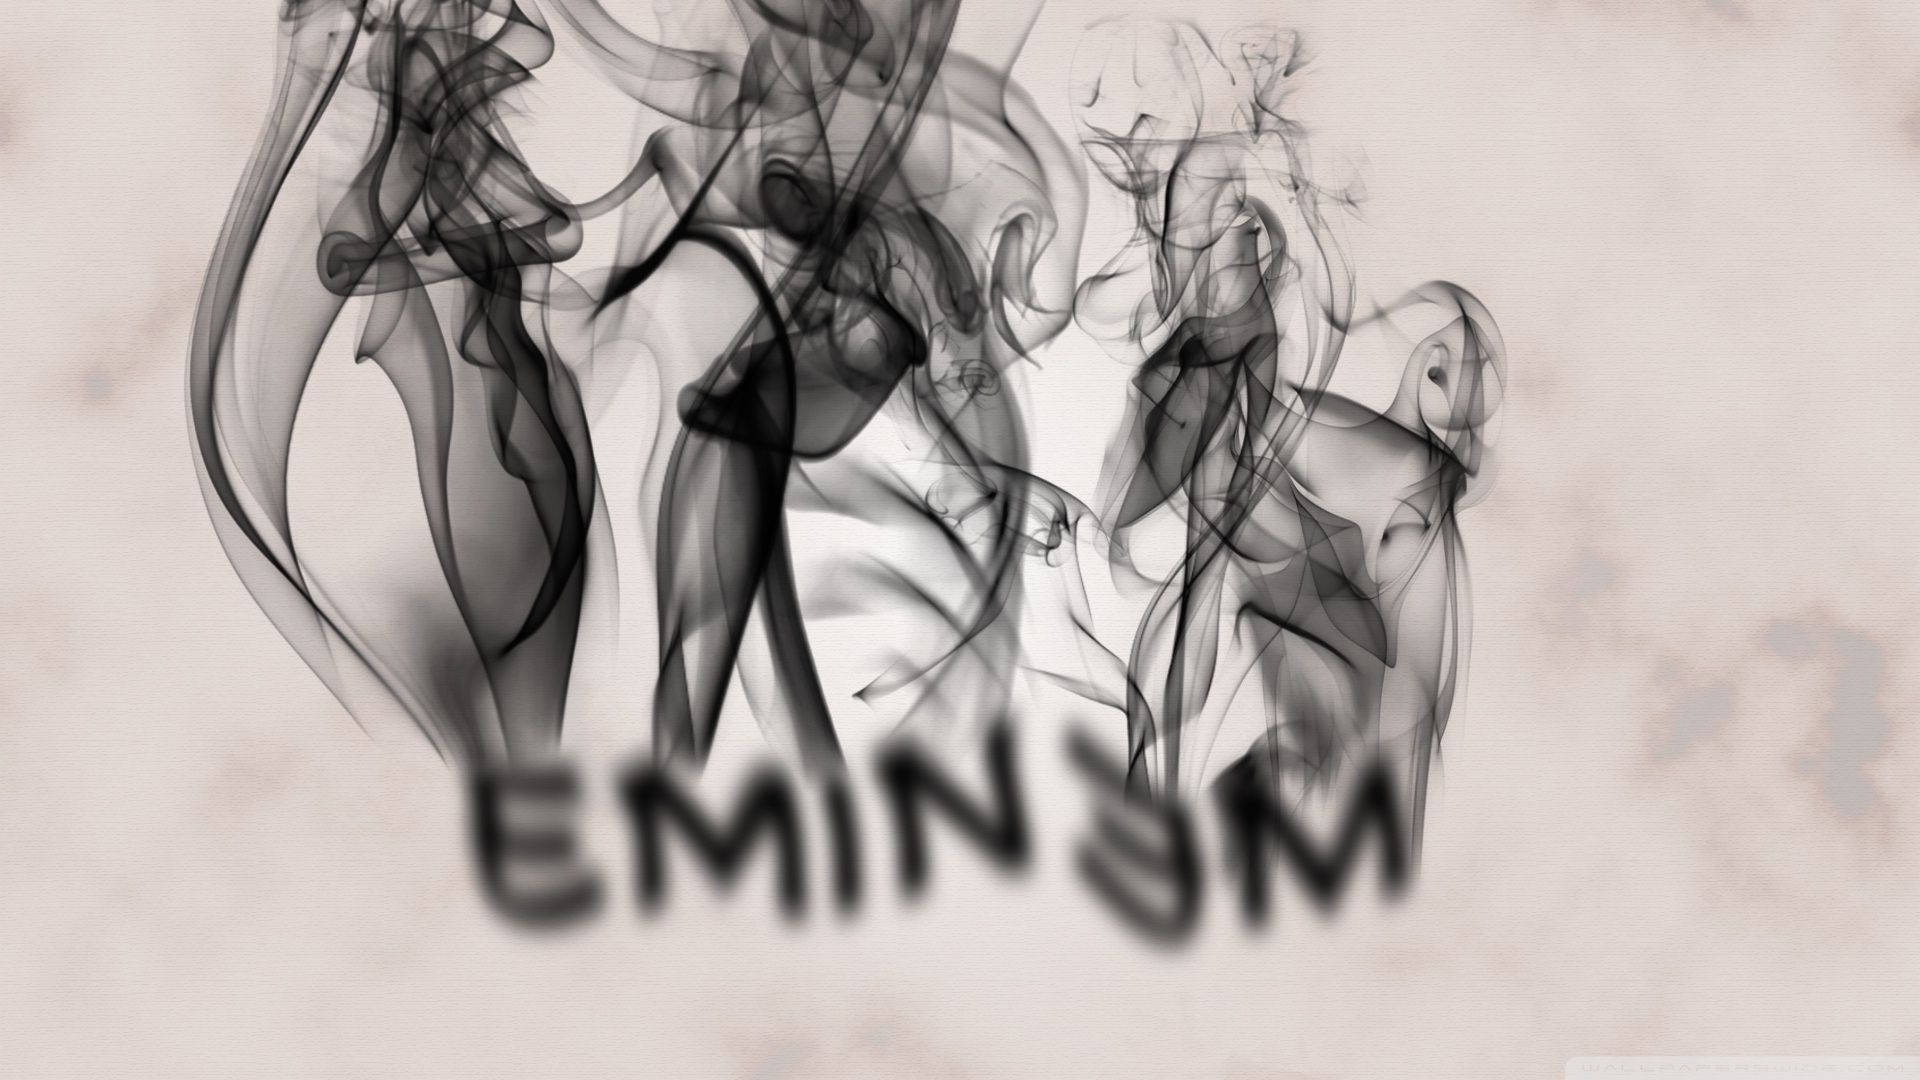 The Smoking Name Of Eminem Background